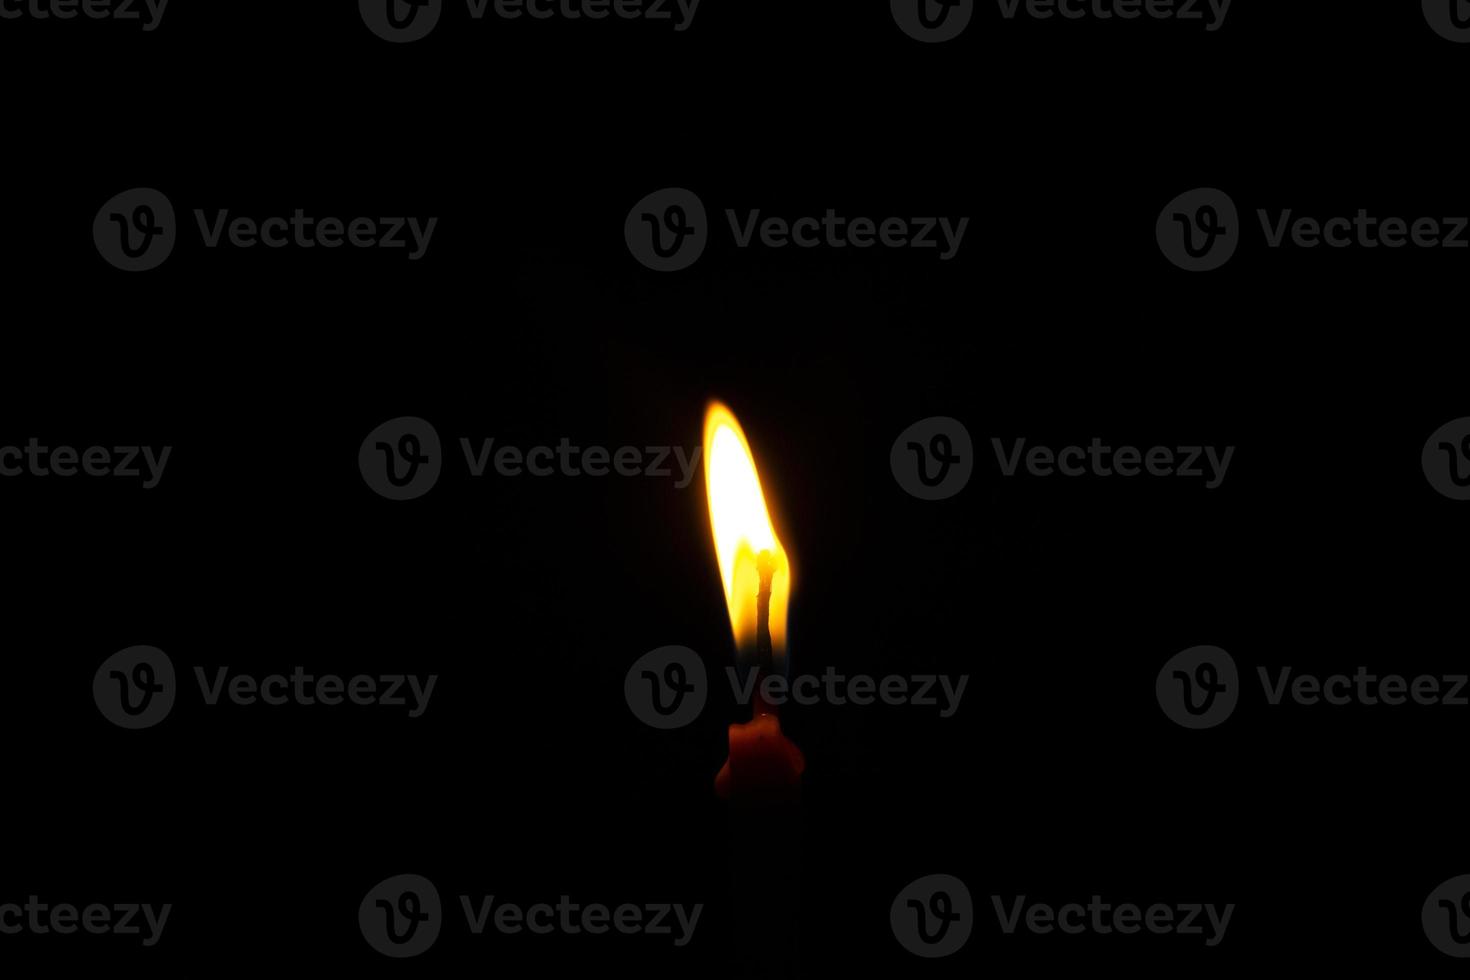 um close-up de uma vela acesa com chama amarela, uma luz de vela no escuro, ela queima e depois de um tempo uma rajada de vento a apaga. foto